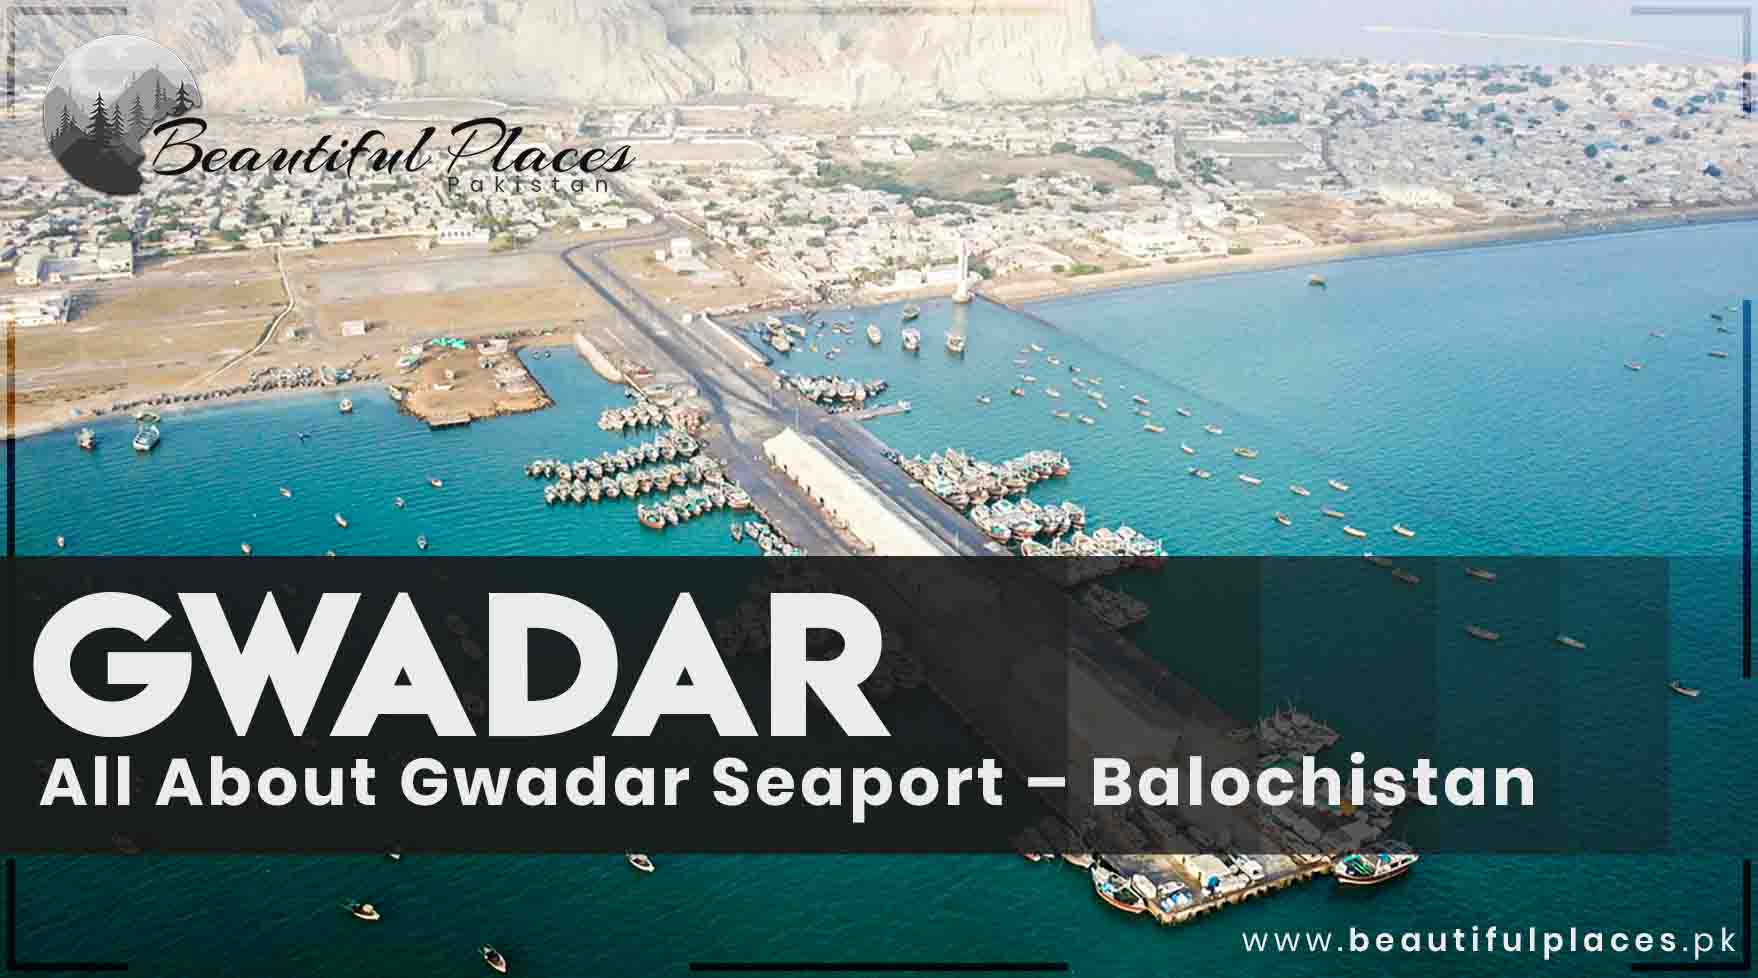 Gwadar Beach Resort | All About Gwadar Seaport - Balochistan